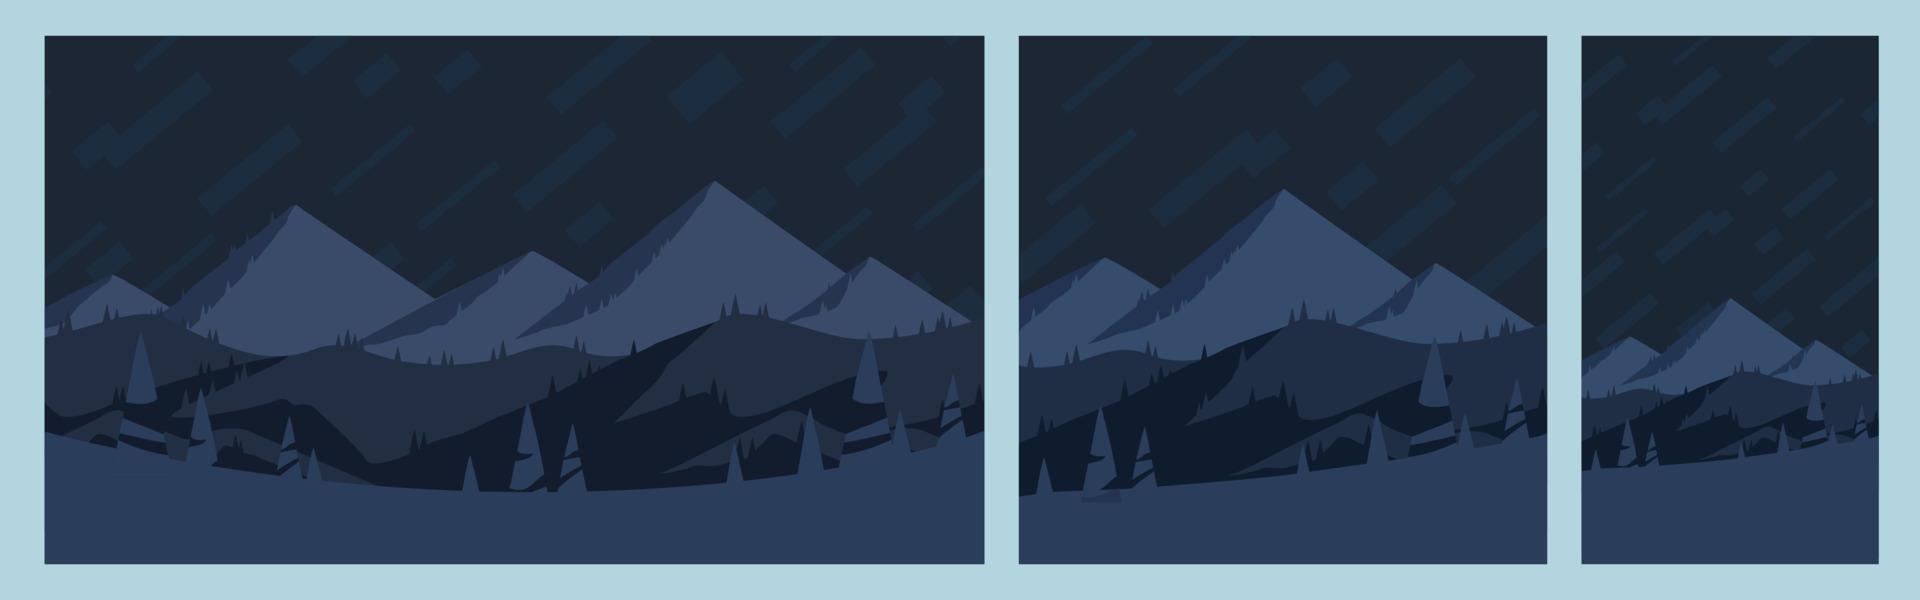 reeks van berg landschappen Bij middernacht. vierkant, horizontaal en verticaal affiches, vlak ontwerp eps vector. berg sneeuw pieken en heuvels Bij nacht illustratie. vector